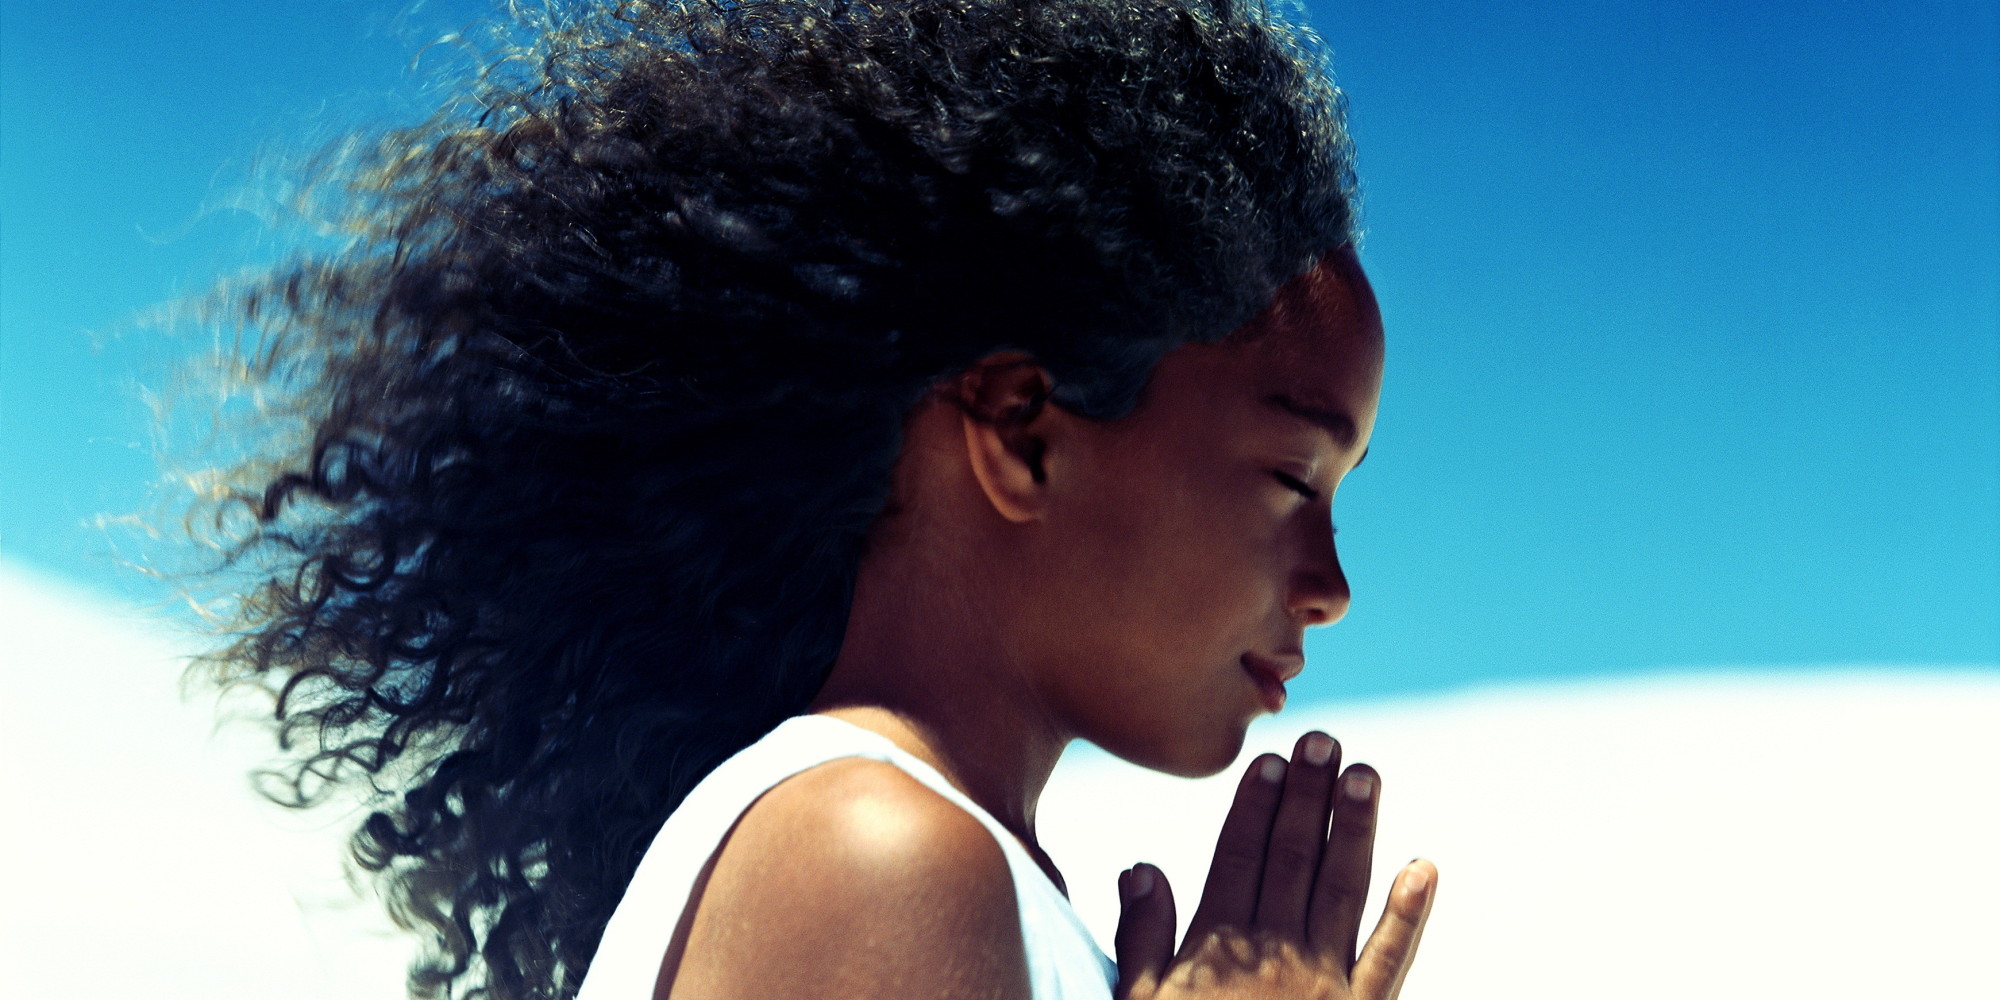 Best Black Love Images On Pinterest Black Women Black Beauty